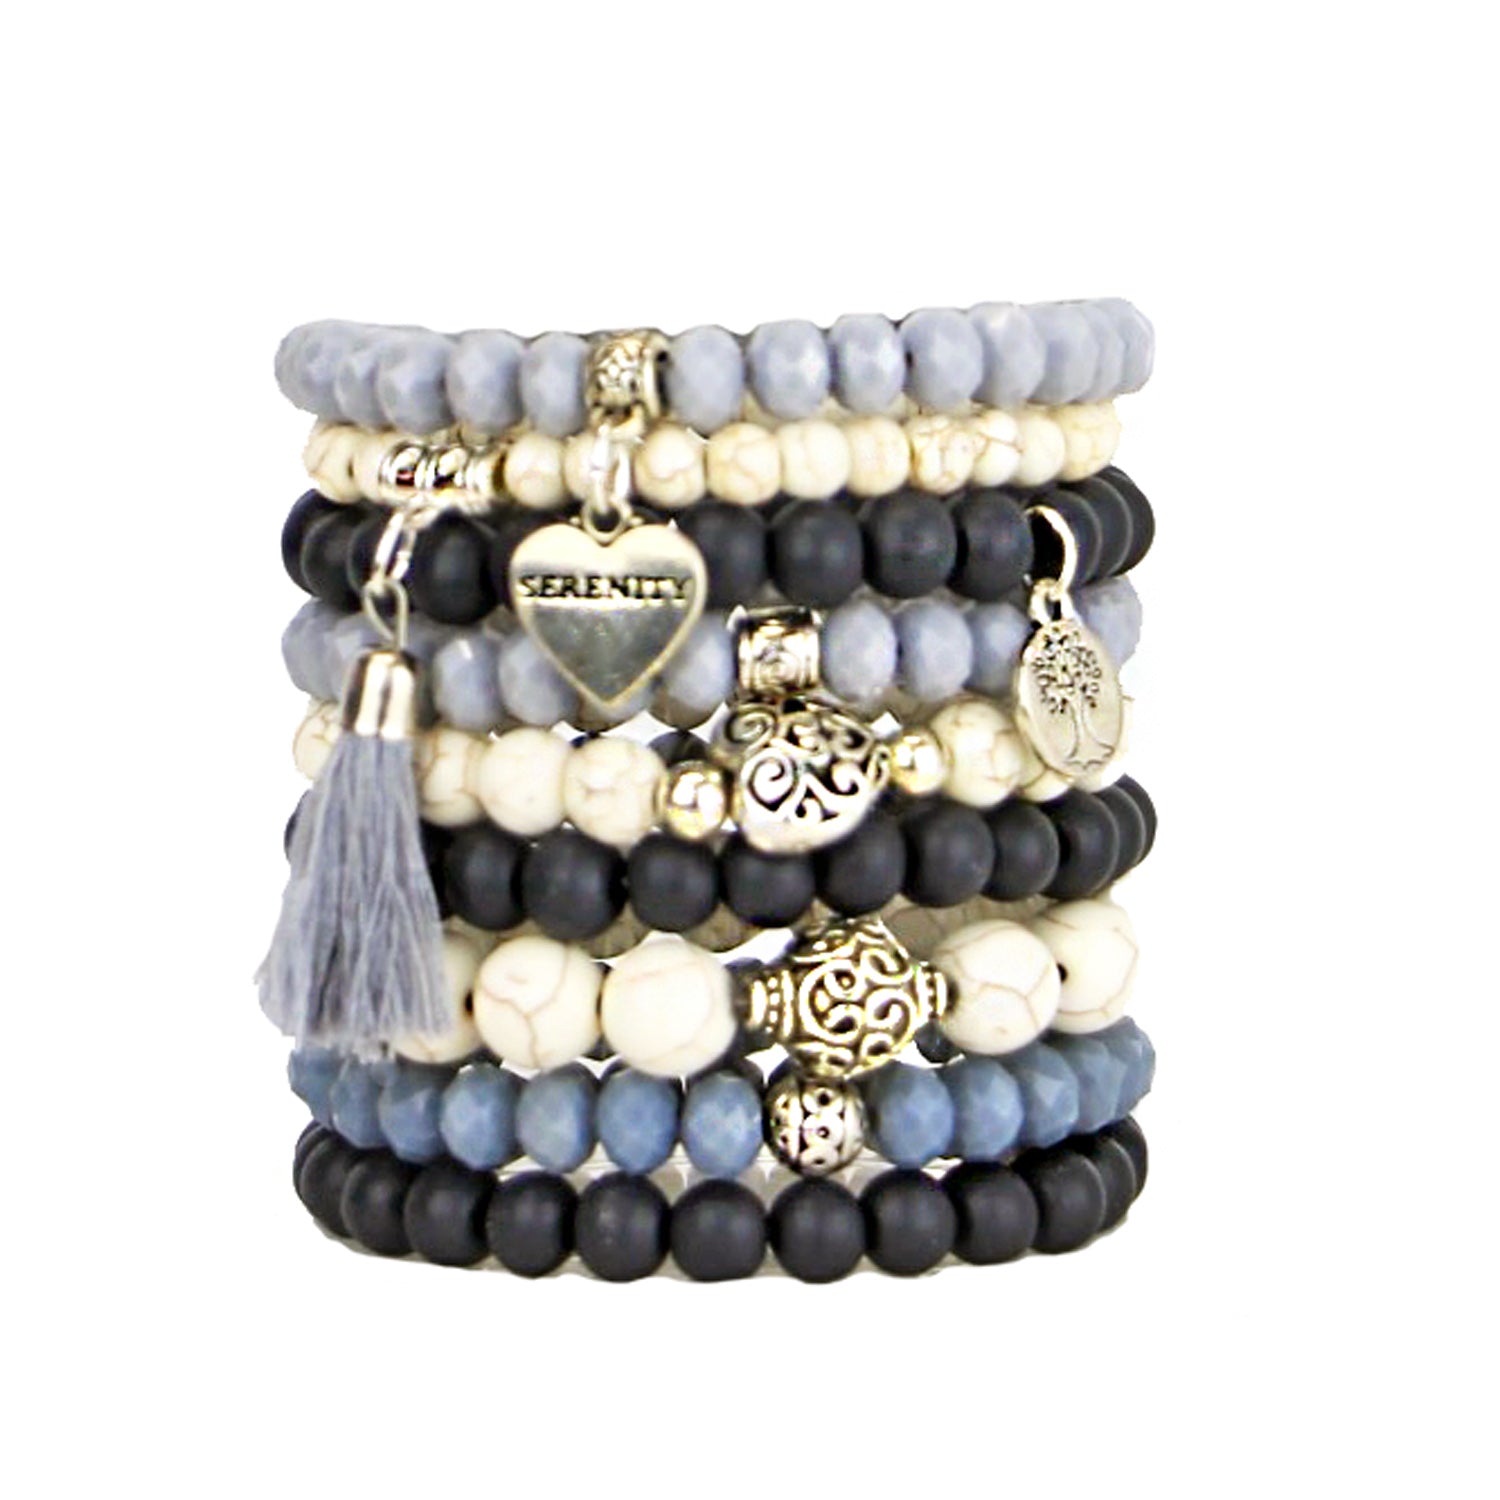 Serene - Bead Bracelets Set of 9